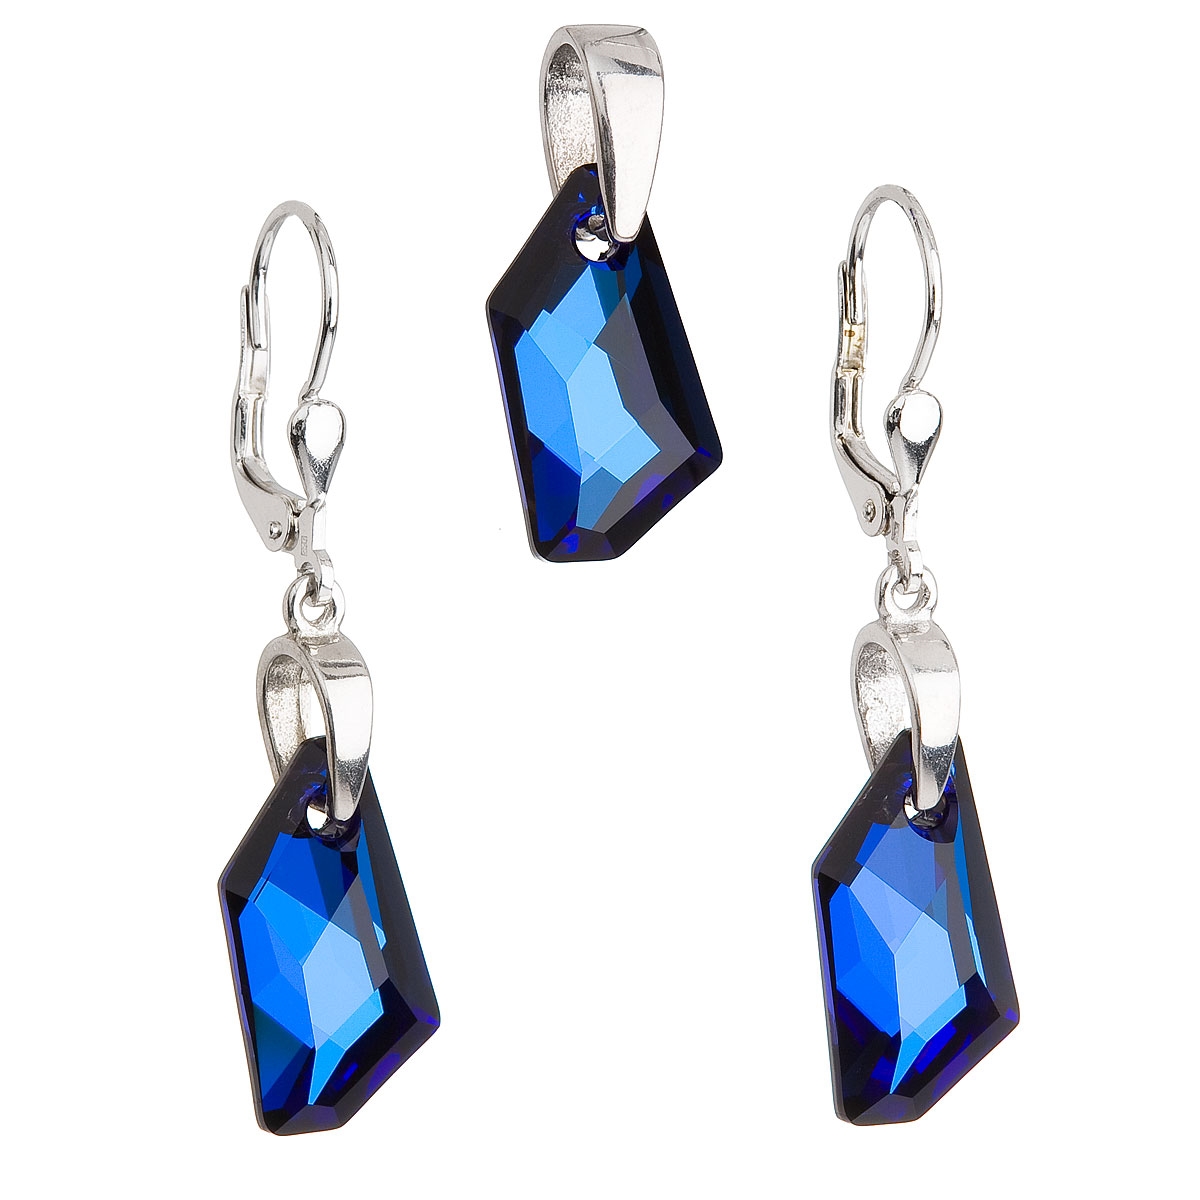 Sada šperkov s kameňmi Crystals from Swarovski ® Blue